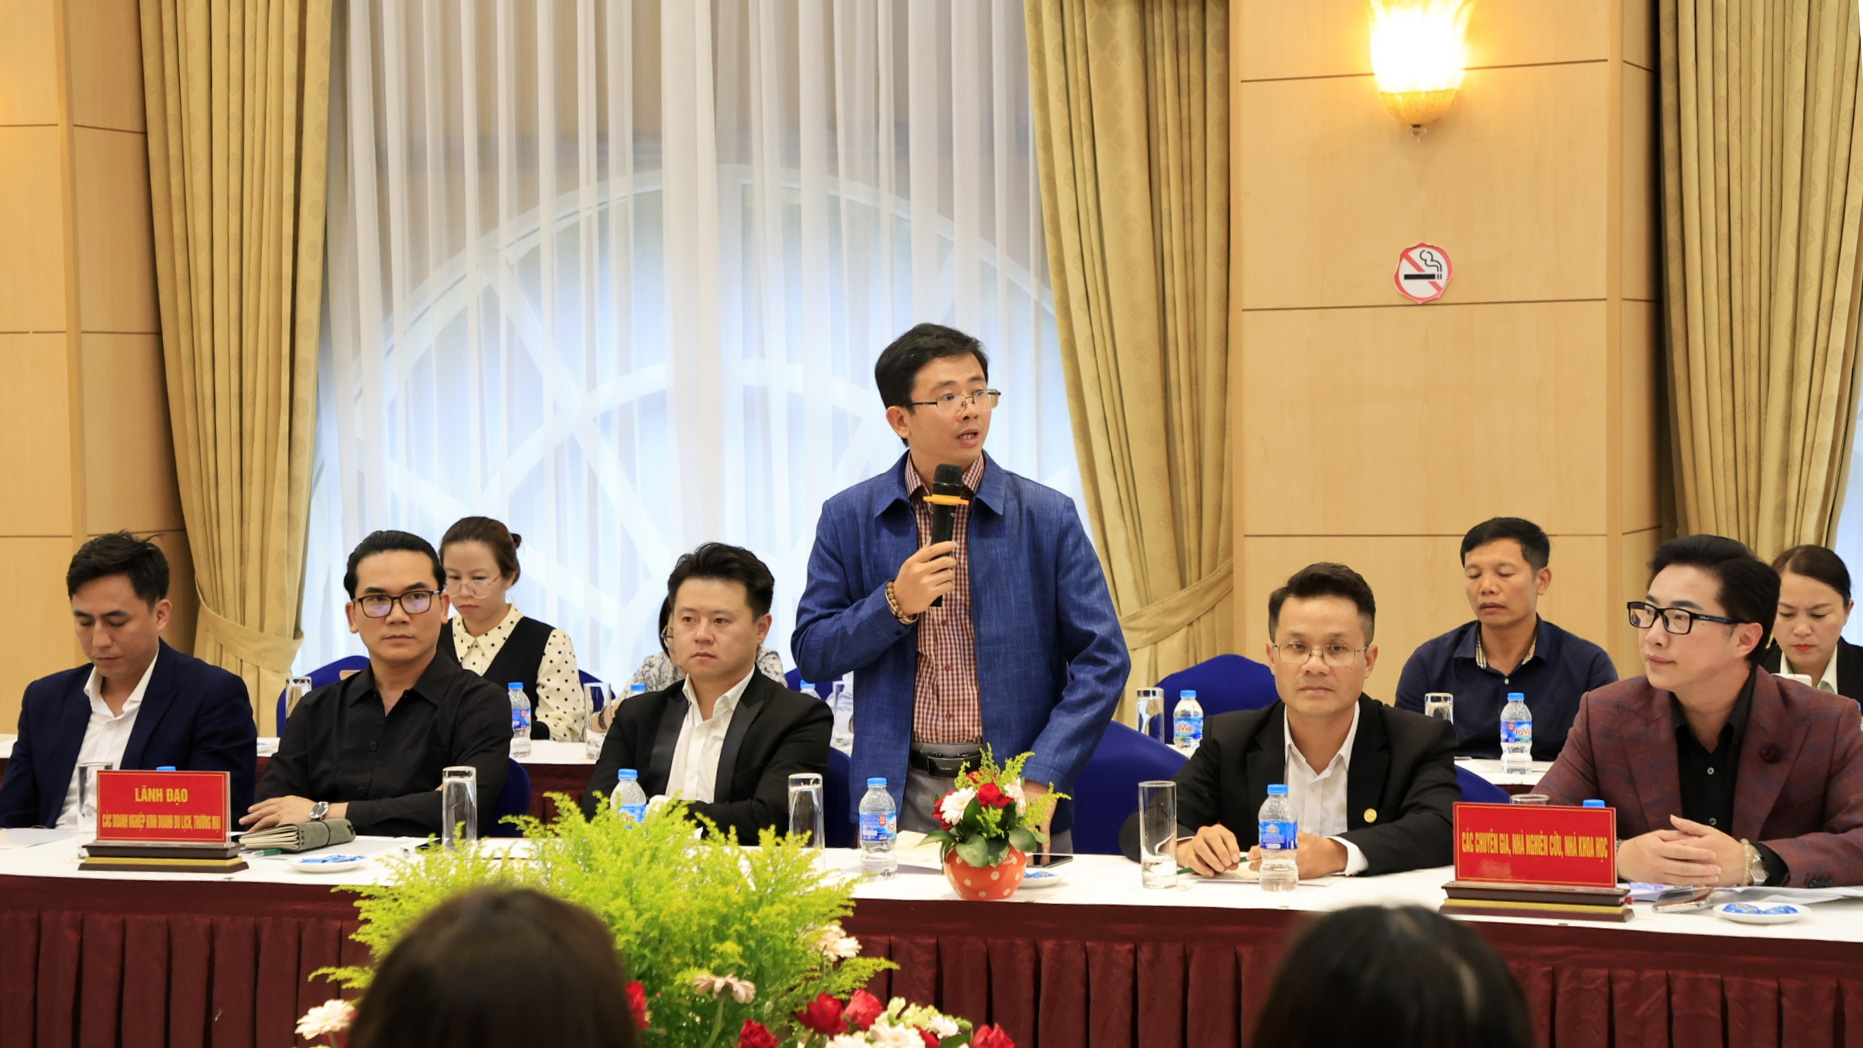 PGS.TS Nguyễn Văn Anh (Trường Đại học Đà Lạt): Nâng cao chất lượng du lịch qua công tác đào tạo nguồn nhân lực chất lượng cao…